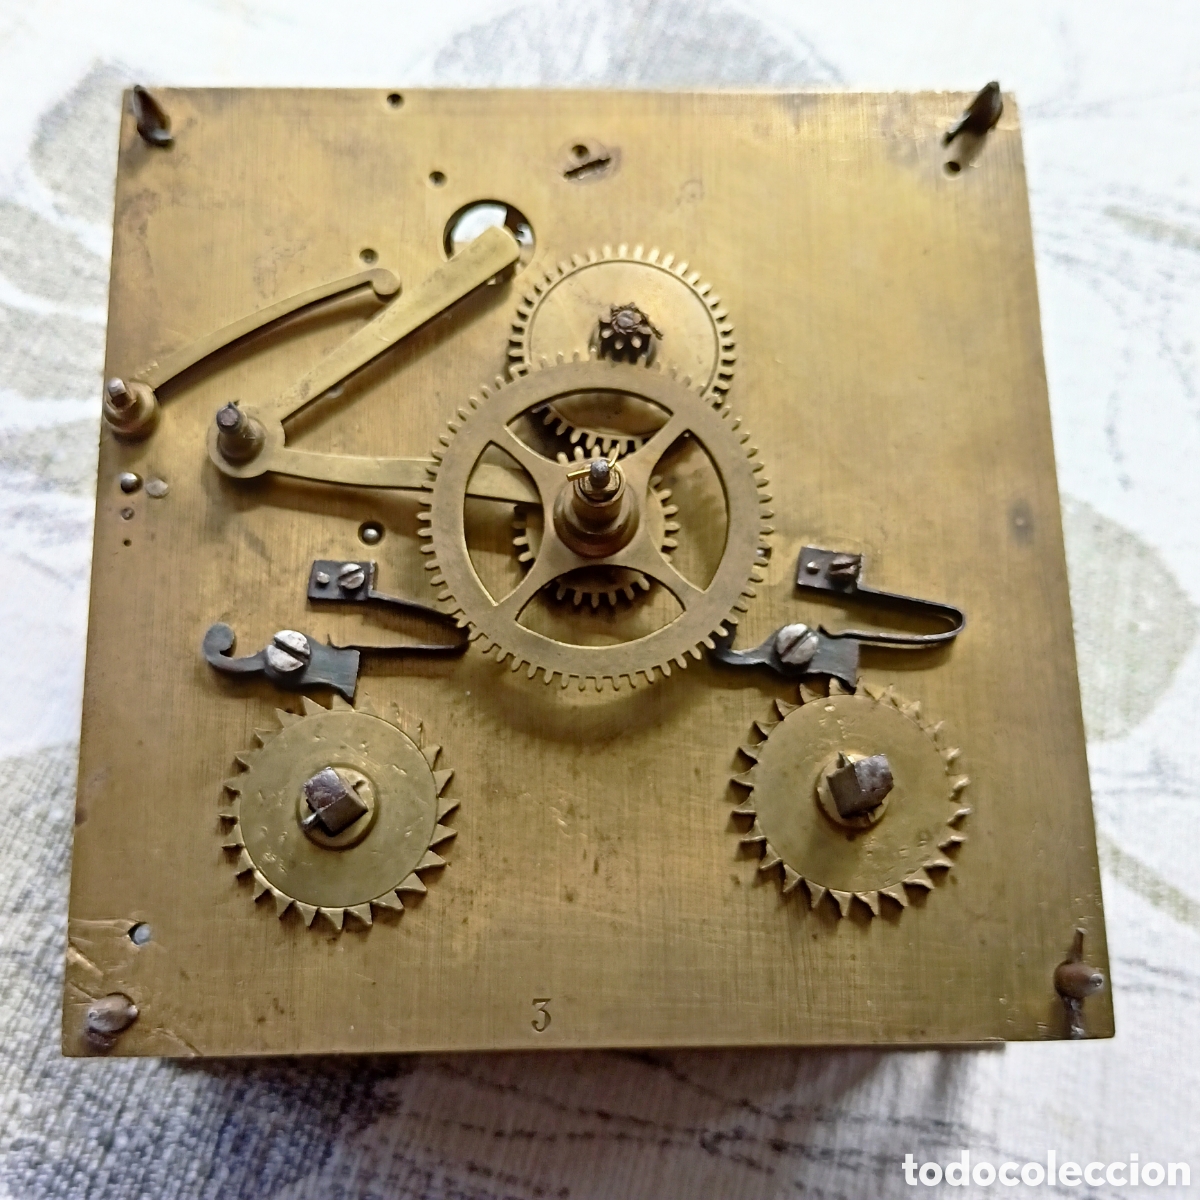 Comprar Mecanismo Reloj Pared  Catálogo de Mecanismo Reloj Pared